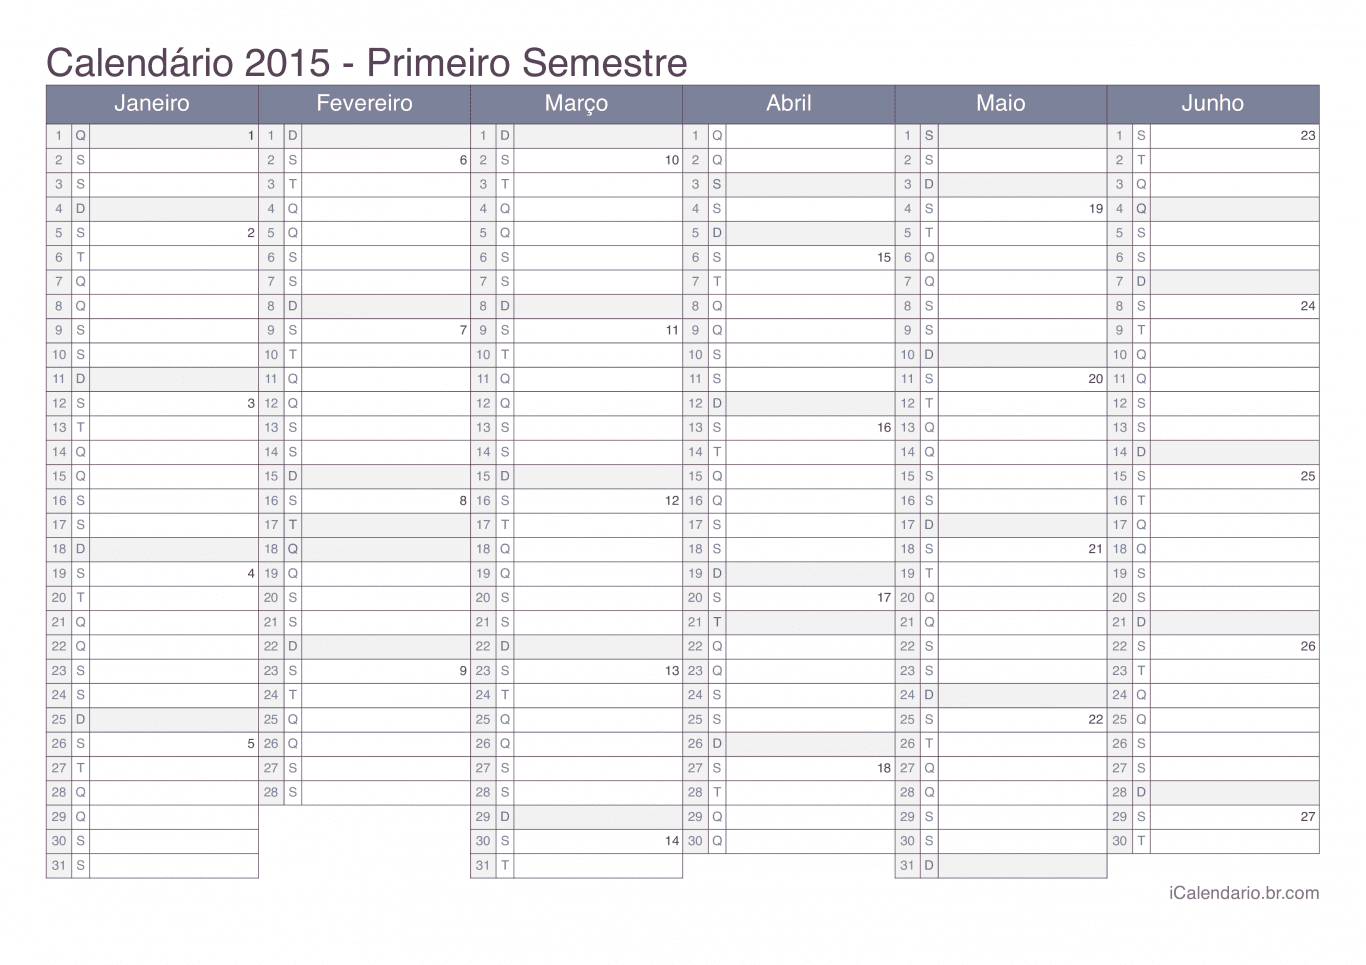 Calendário por semestre com números da semana 2015 - Office